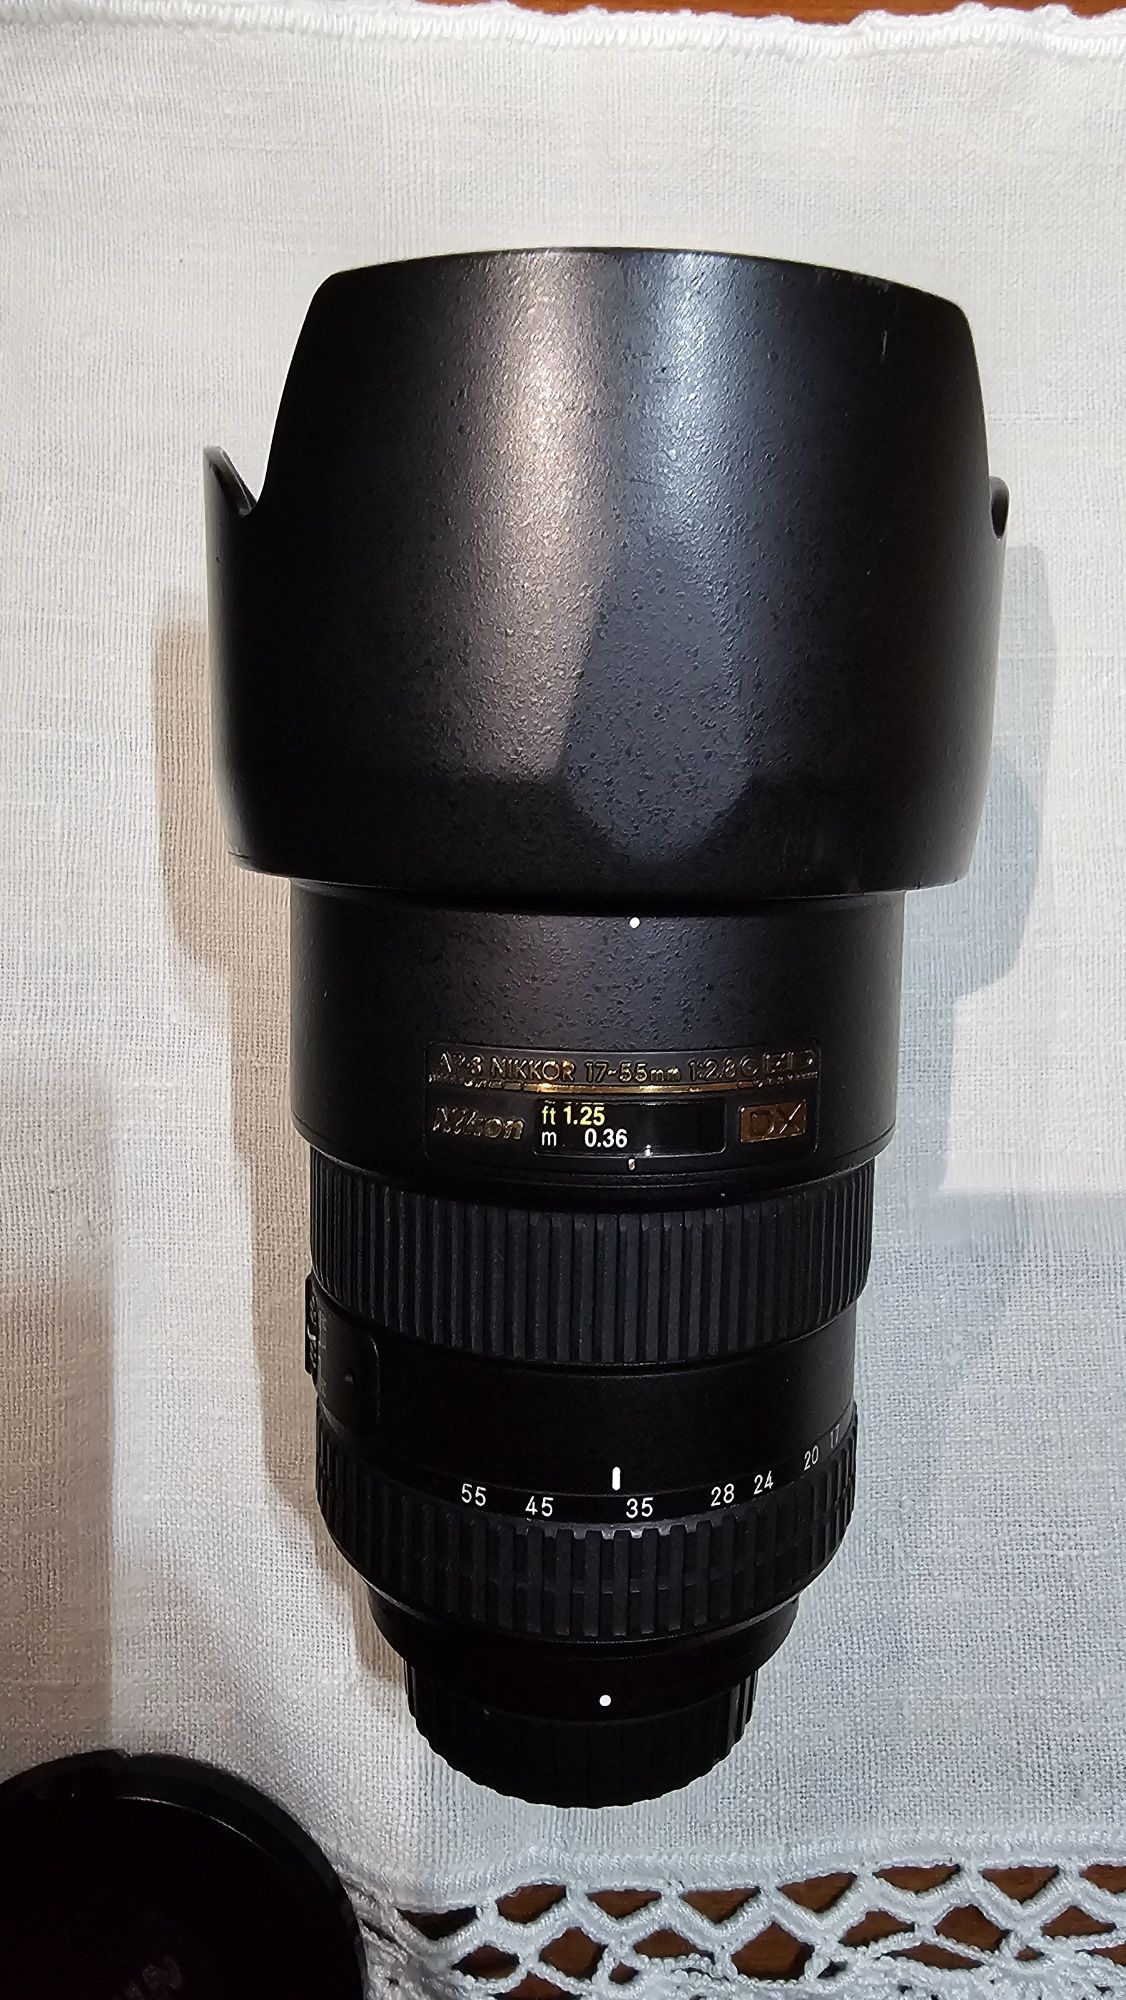 Nikon Nikkor 17-55mm f/2.8G AF-S DX IF ED